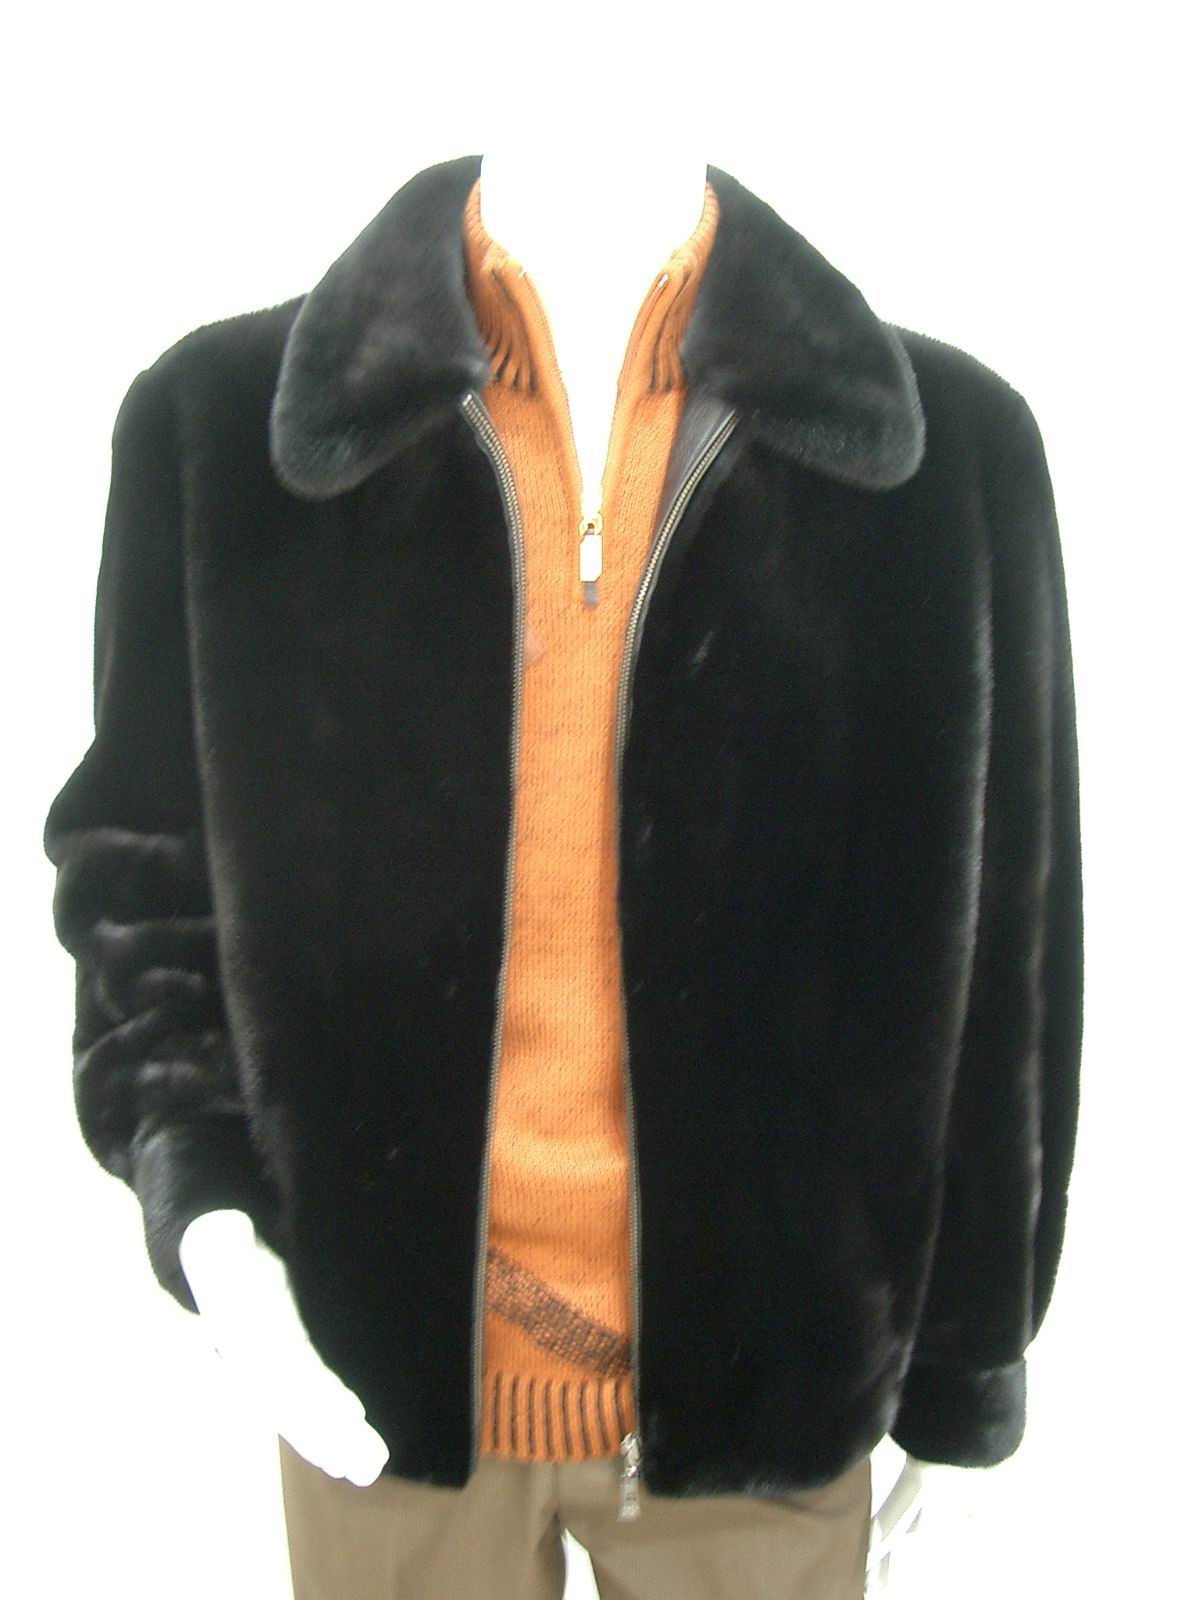 Sell Mink Fur Coats